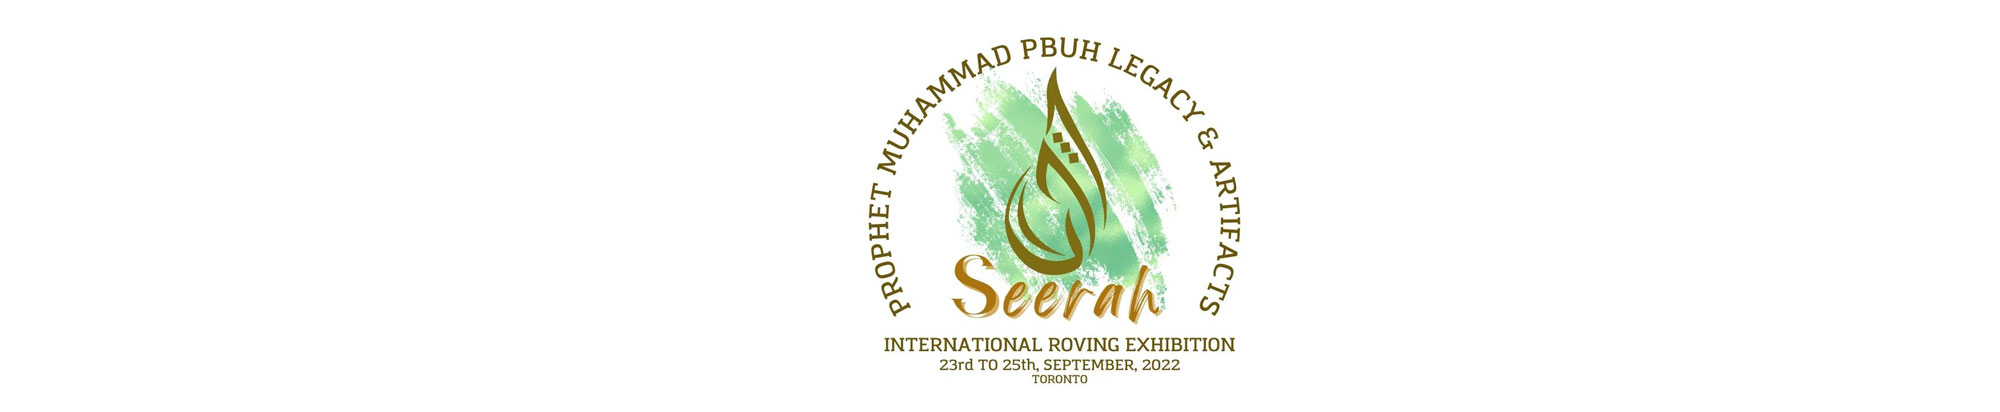 Seerah - Prophet Muhammad (PBUH) Legacy & Artifact